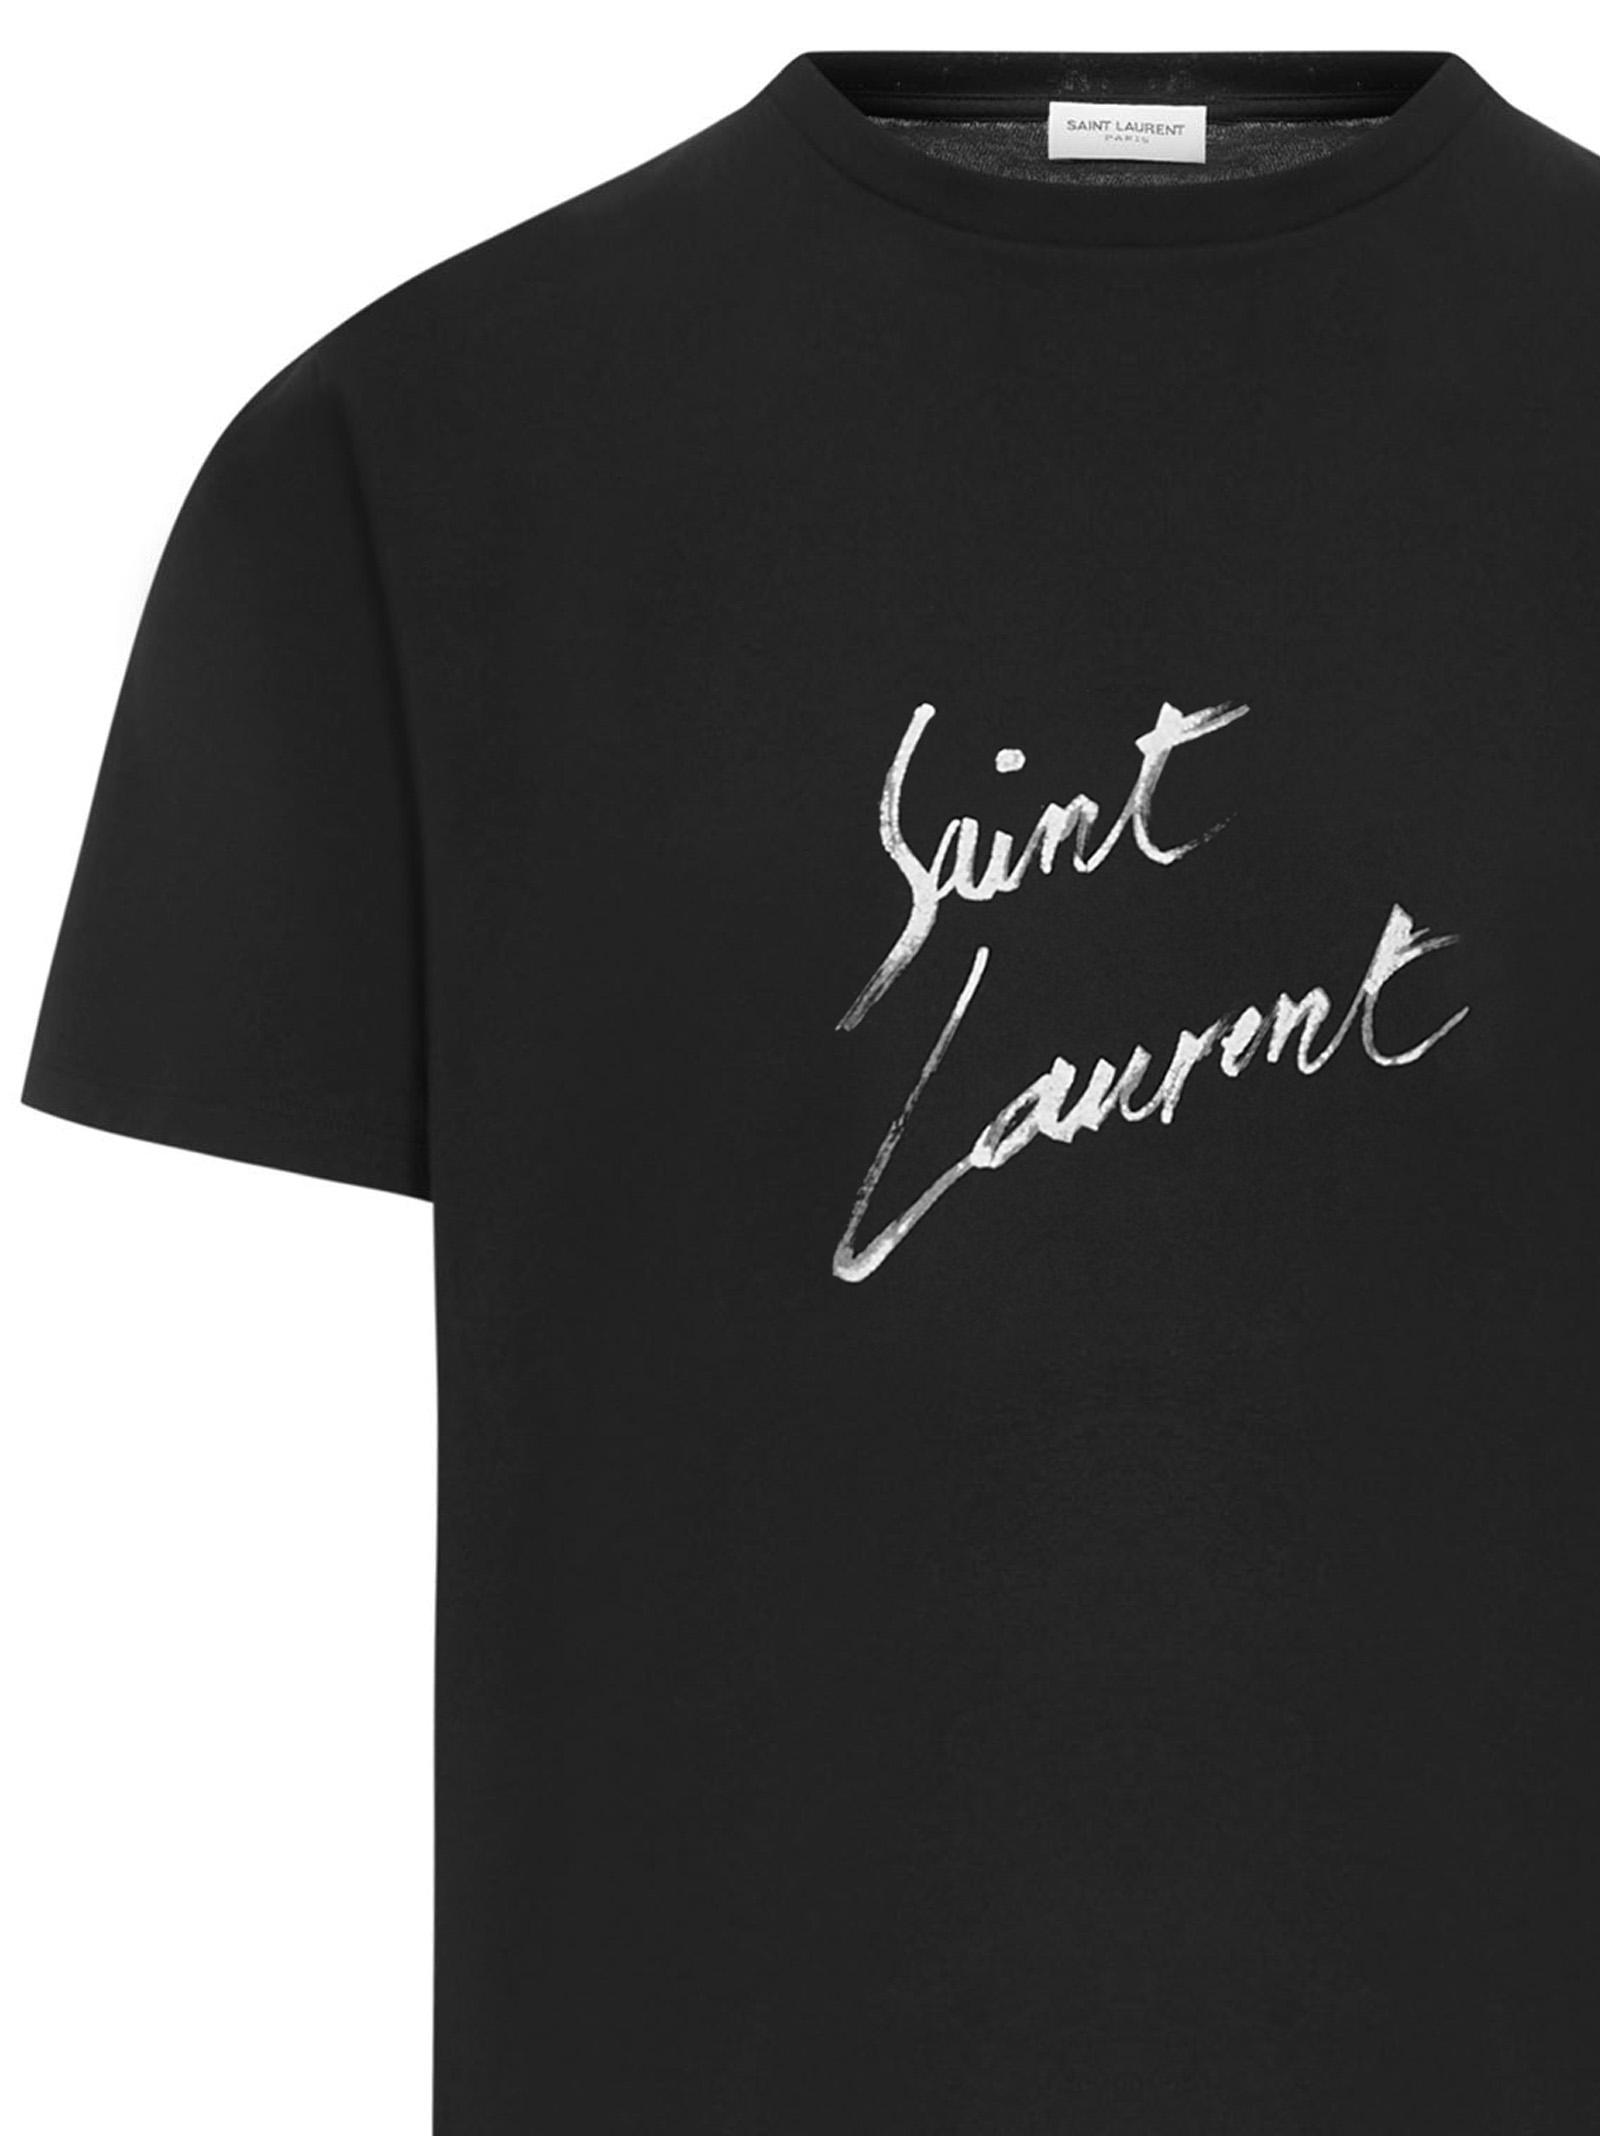 Saint Laurent Cotton Signature T-shirt in Black for Men - Lyst